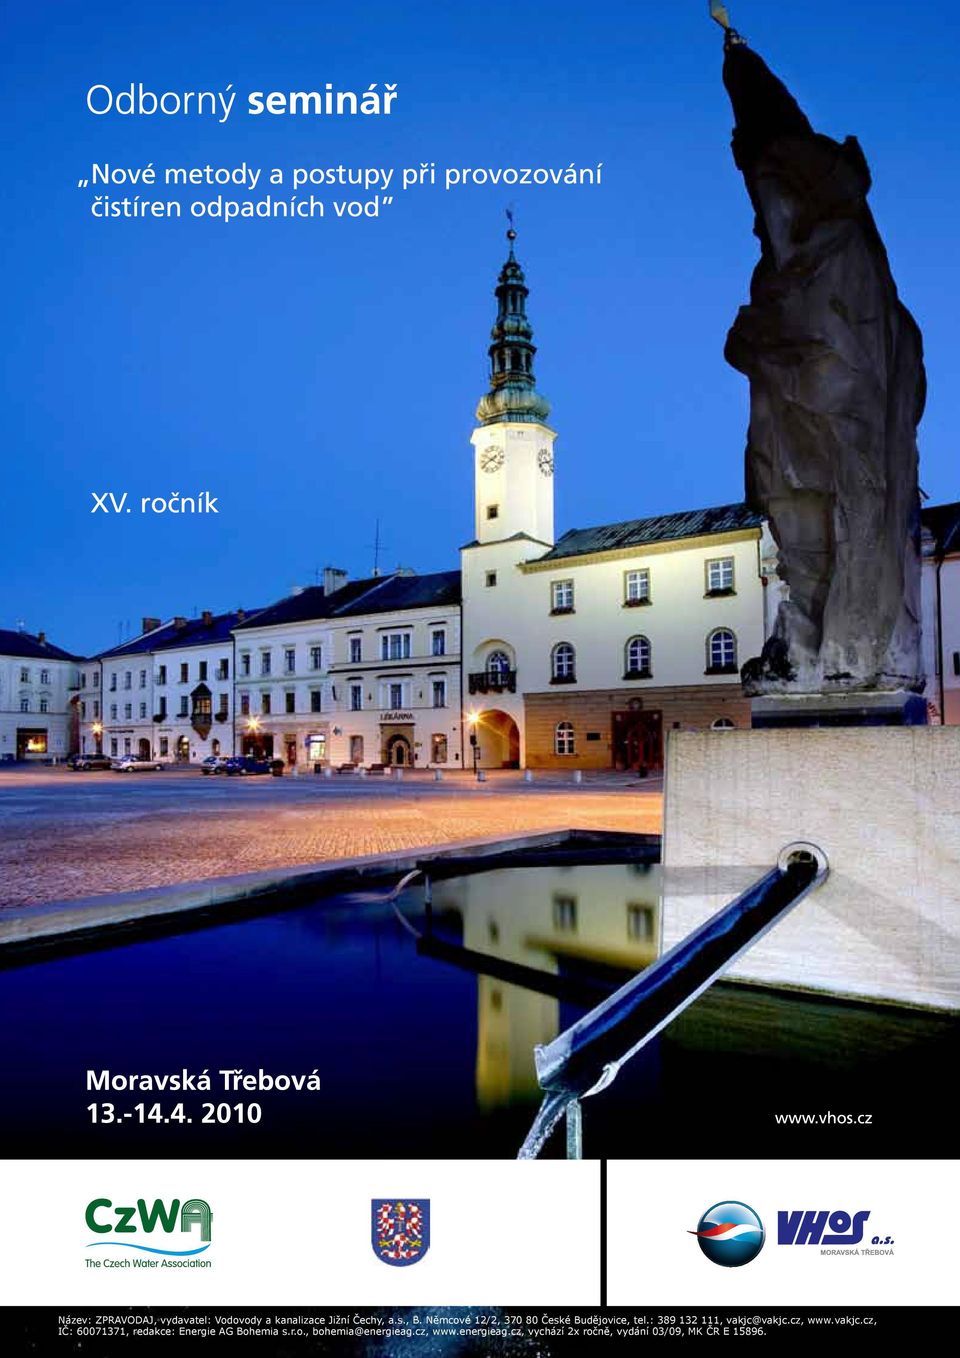 cz, www.vakjc.cz, IČ: 60071371, redakce: Energie AG Bohemia s.r.o., bohemia@energieag.